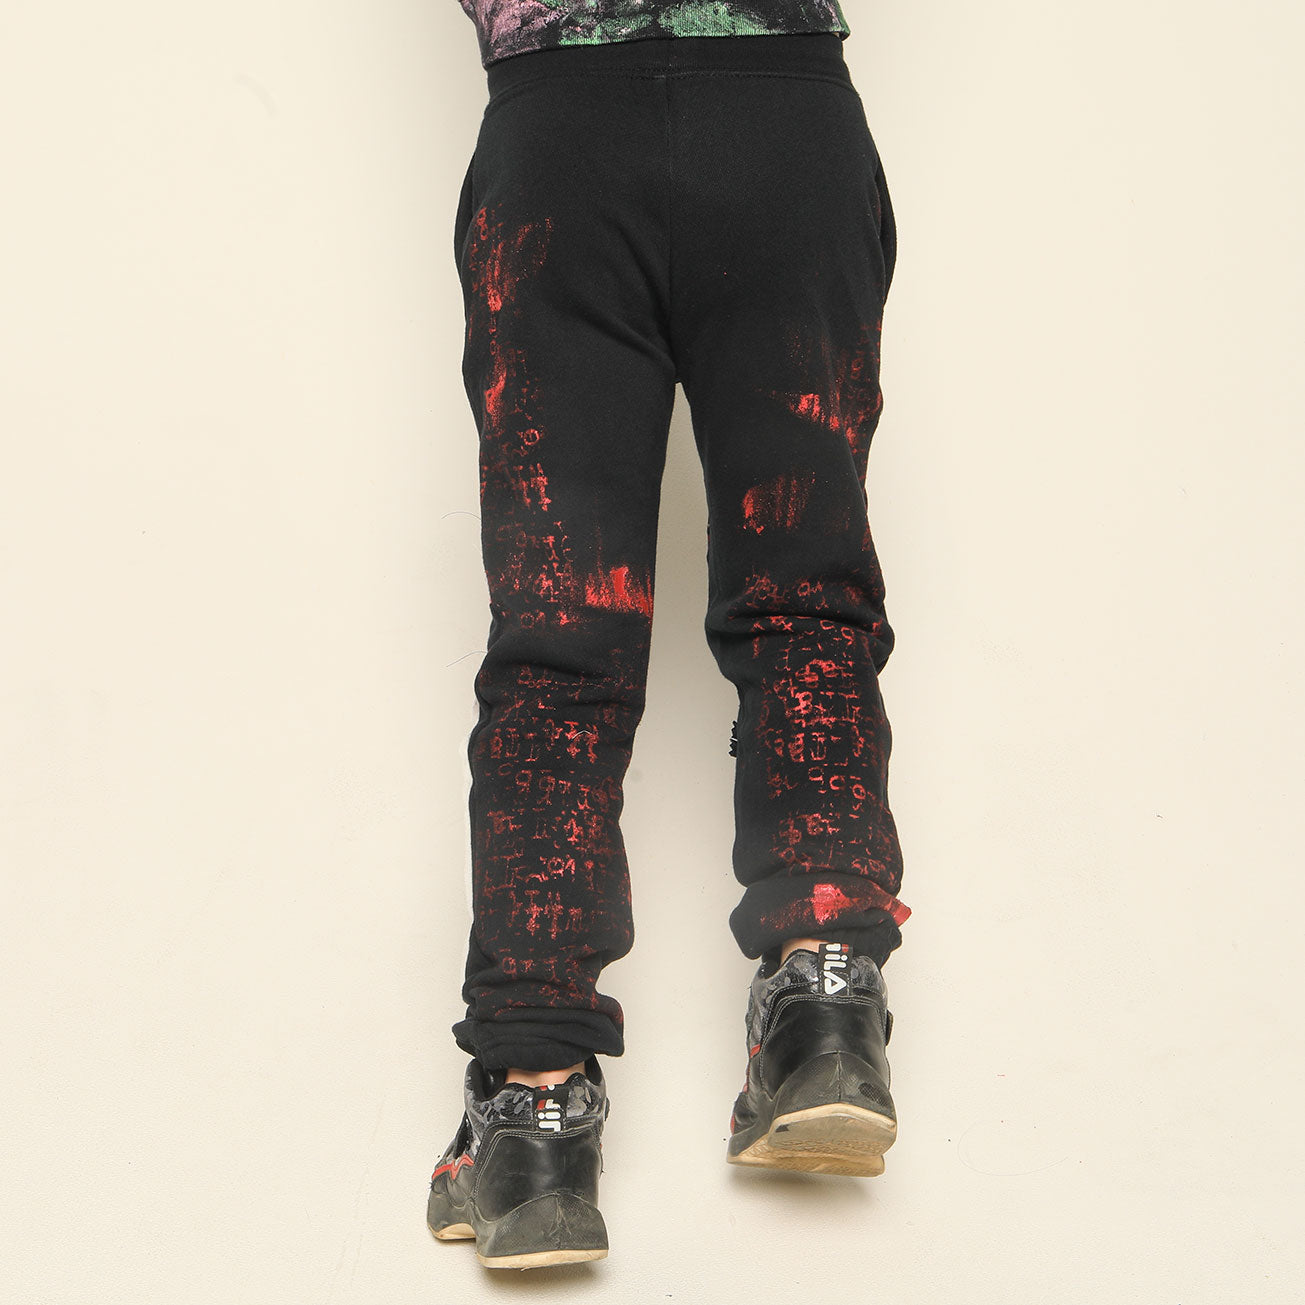 Anarchy Patchwork Paint Pants (3 sizes)